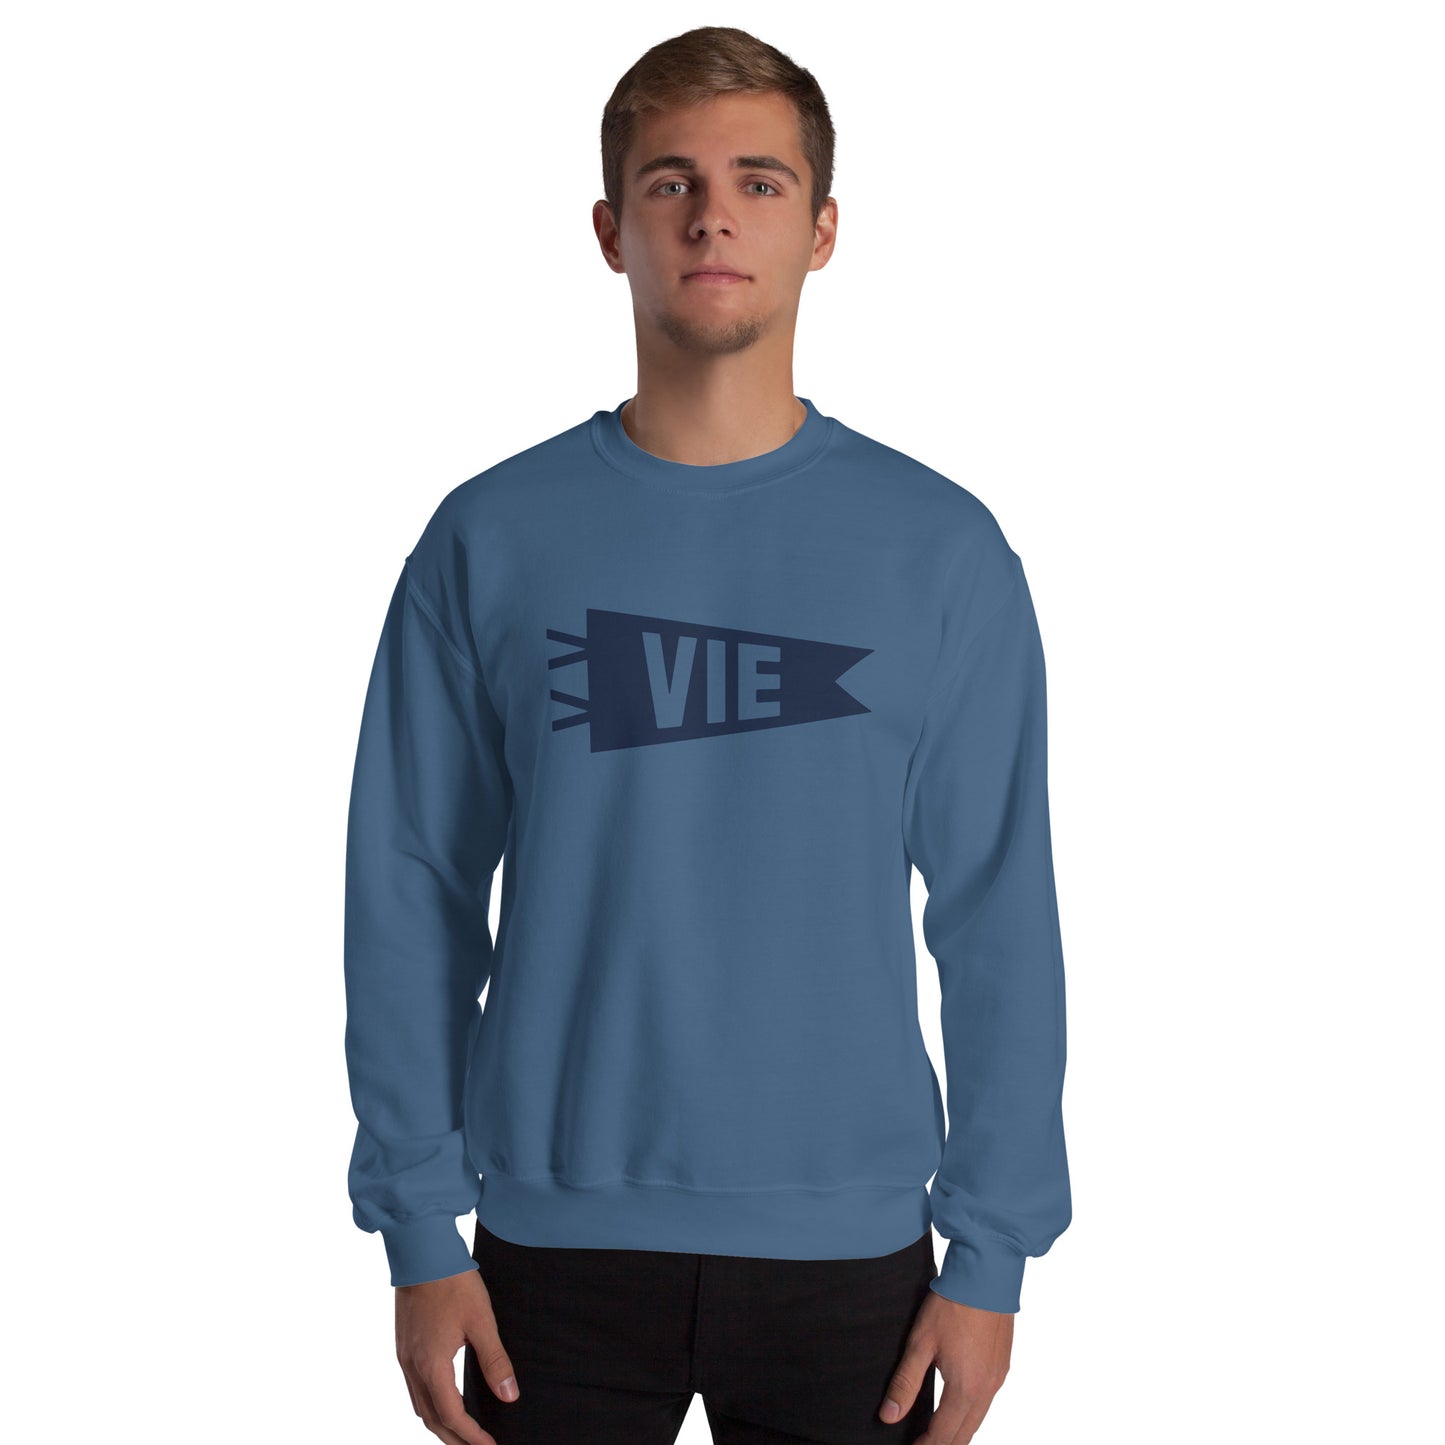 Airport Code Sweatshirt - Navy Blue Graphic • VIE Vienna • YHM Designs - Image 06